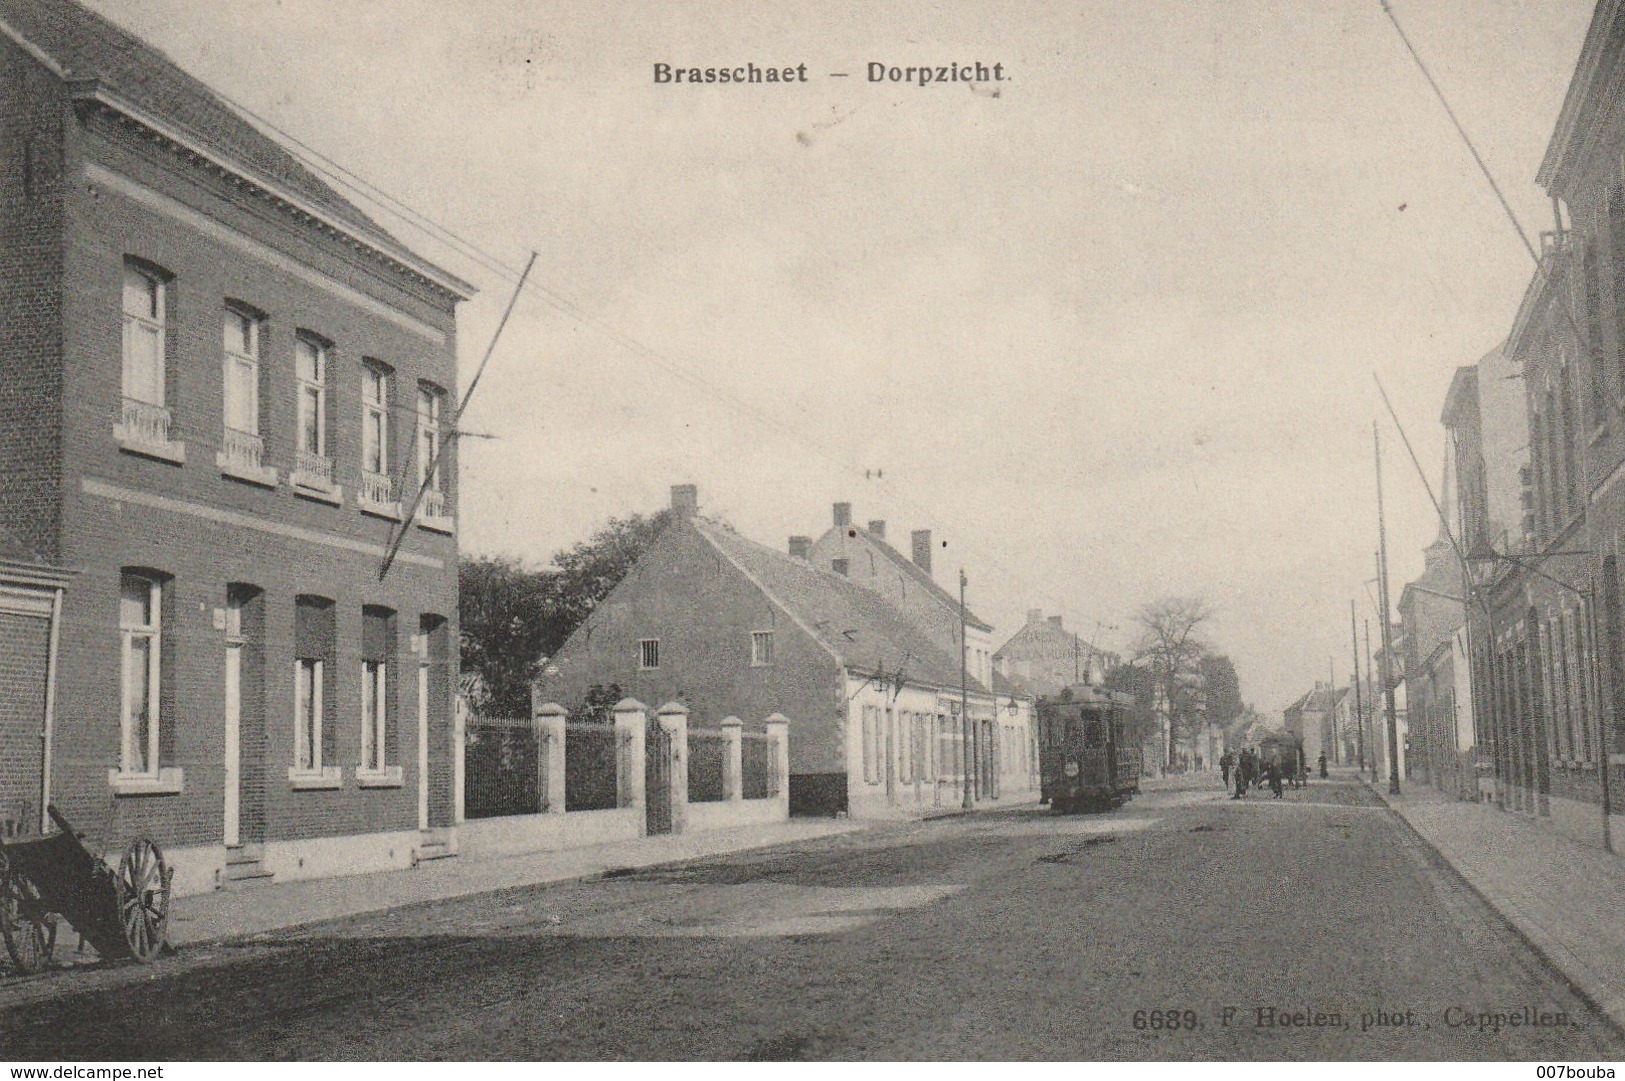 BRASSCHAAT / BRASSCHAET - DORPZICHT - TRAM / Voyagée 1913 / PHOTO F. HOELEN - CAPPELLEN - Brasschaat